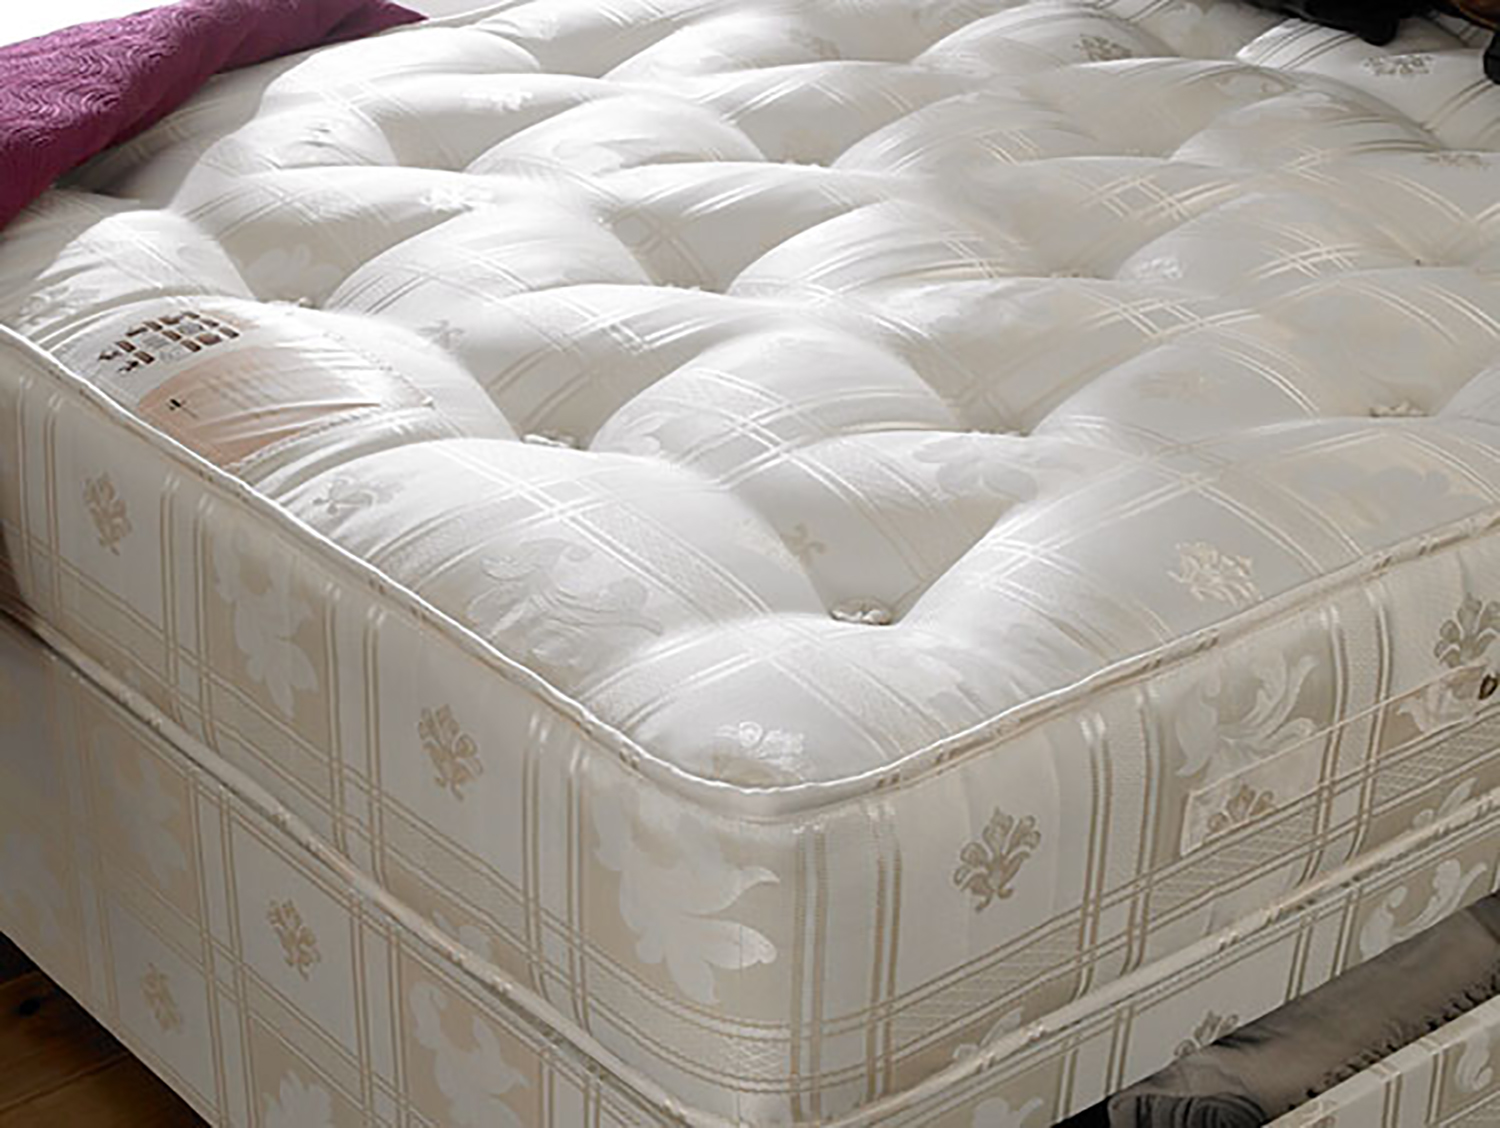 kozee sleep 1000 pocket sprung mattress